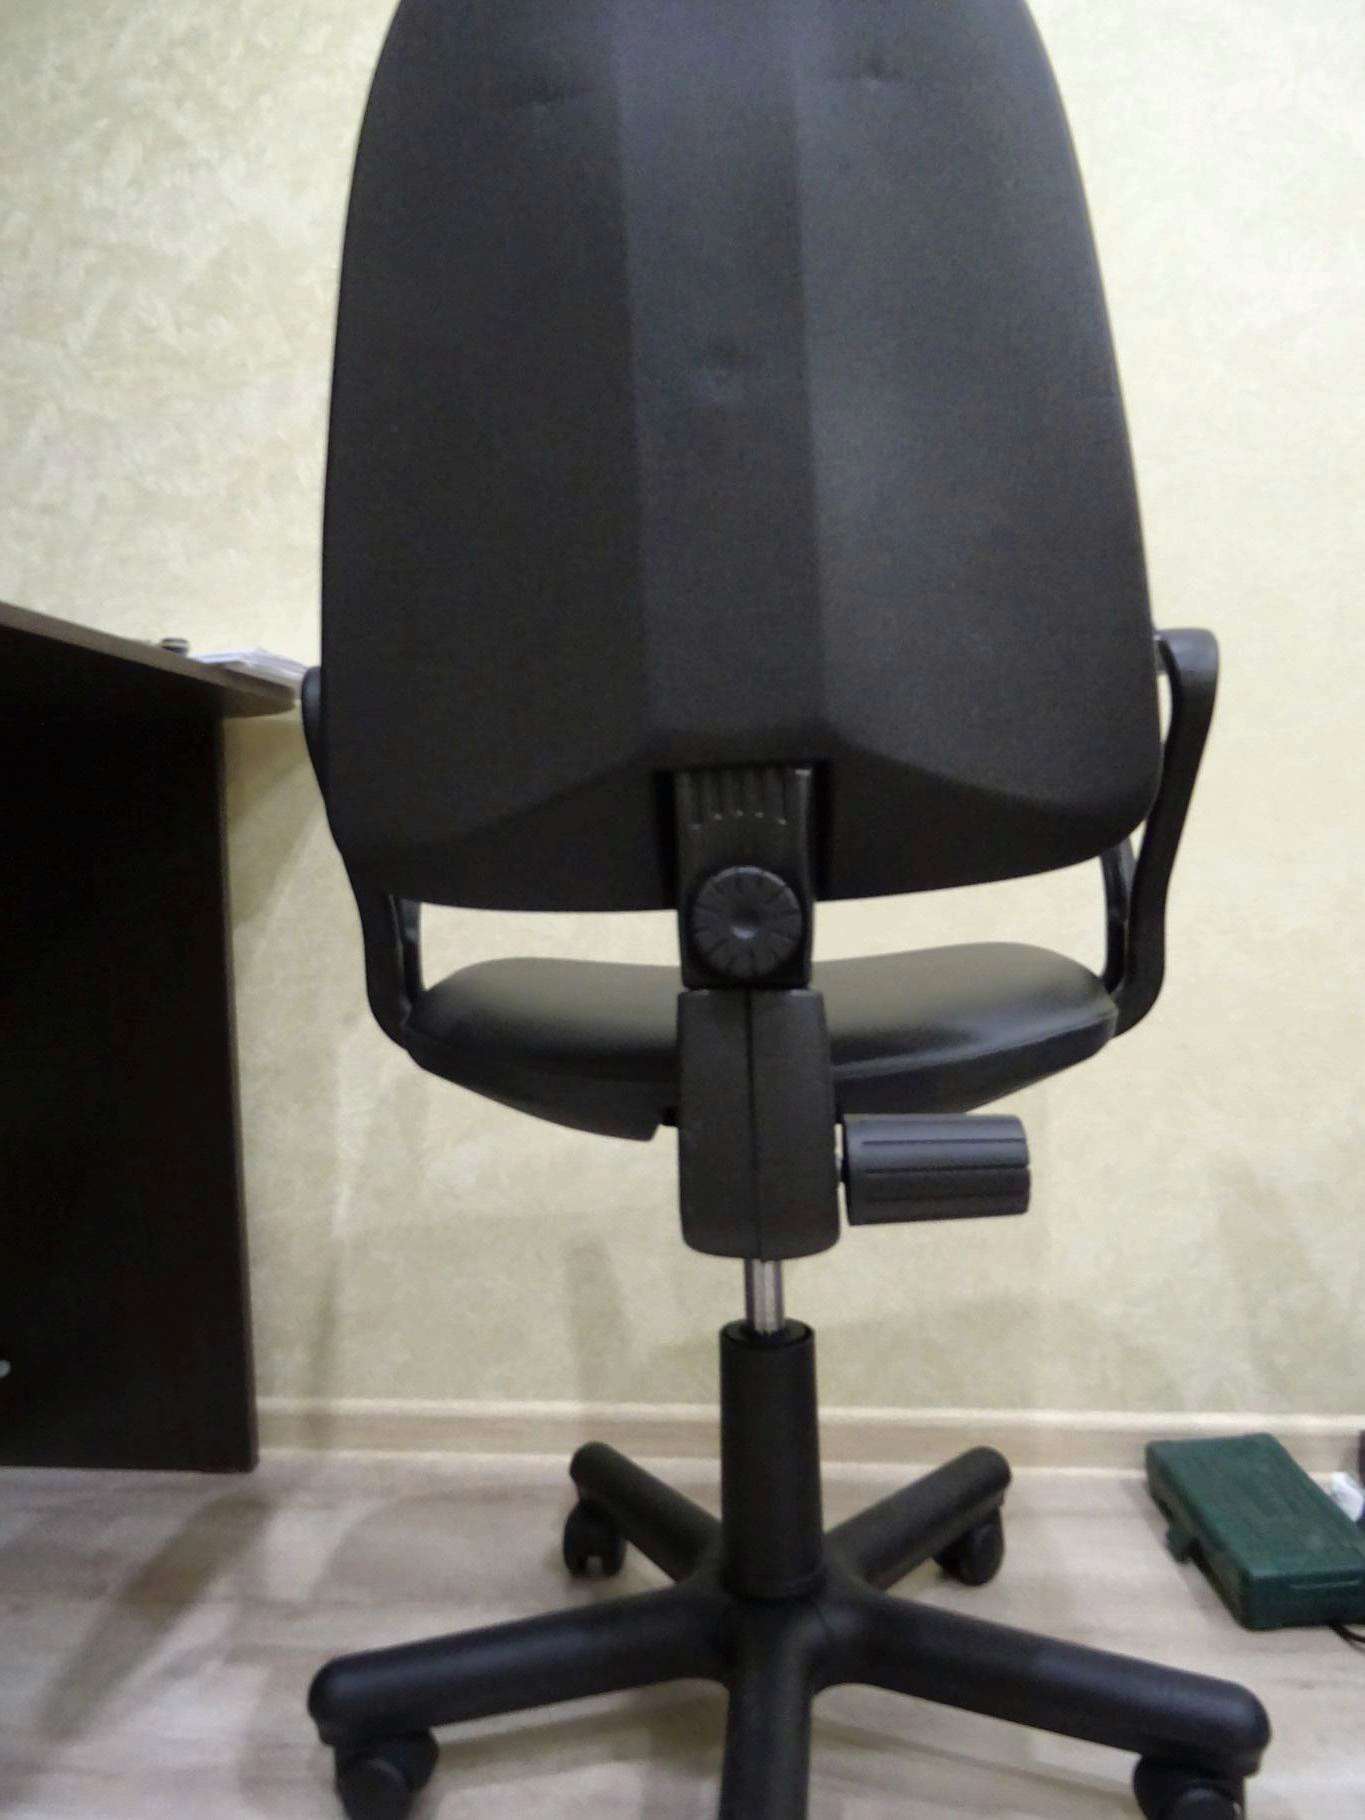 Кресло офисное новый стиль prestige gtp с 11